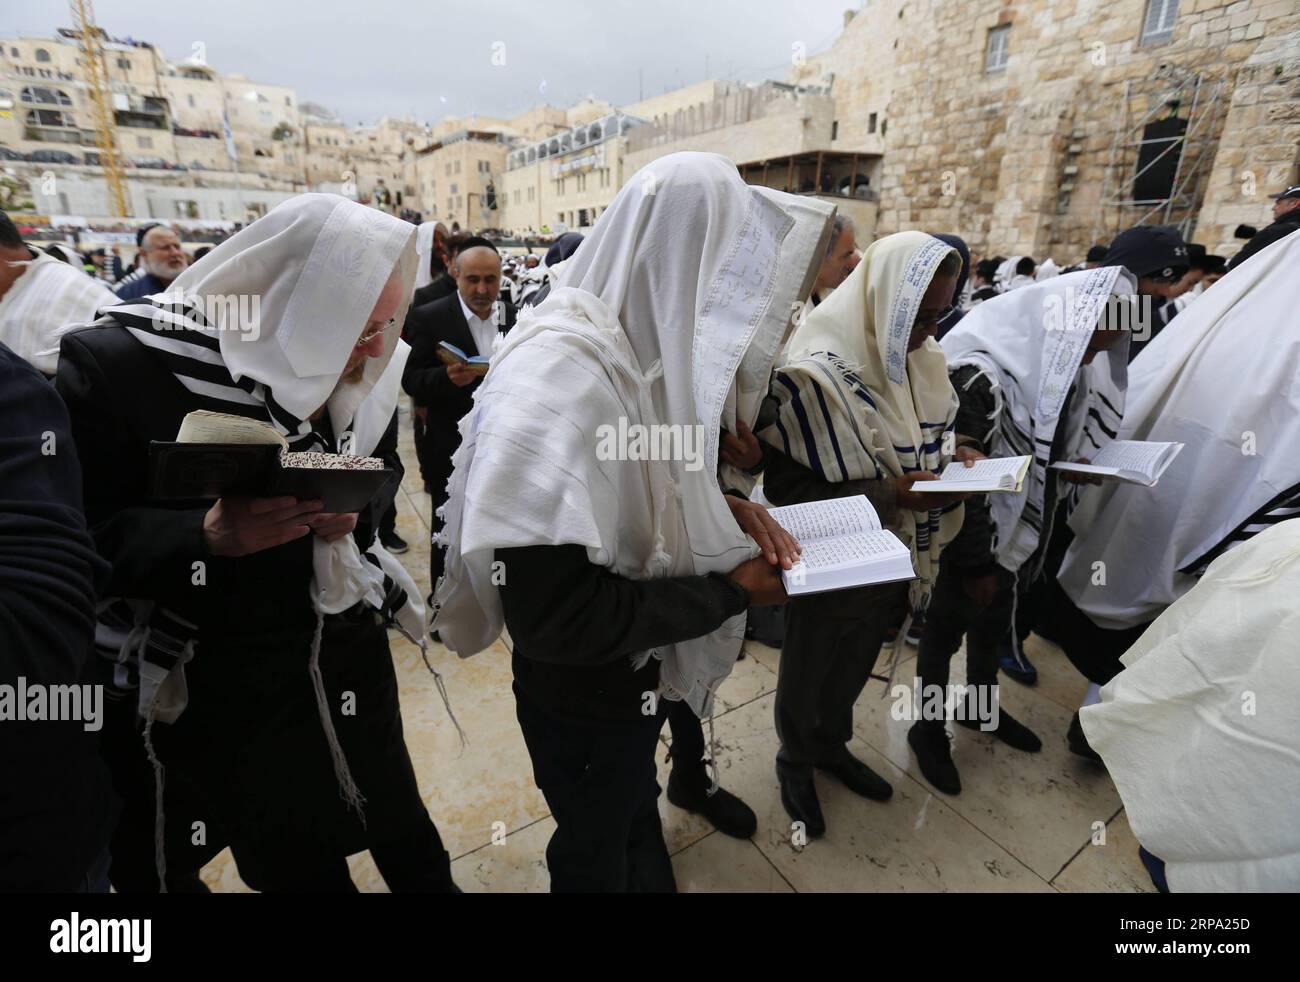 190422 -- GERUSALEMME, 22 aprile 2019 -- gli ebrei partecipano alla benedizione sacerdotale durante la festa di Pasqua al muro Occidentale nella città Vecchia di Gerusalemme il 22 aprile 2019. Migliaia di ebrei compiono il pellegrinaggio a Gerusalemme durante la festa di Pasqua di otto giorni, che commemora l'esodo degli Israeliti dalla schiavitù in Egitto circa 3.500 anni fa. MIDEAST-JERUSALEM-PASSOVER CELEBRATION MuammarxAwad PUBLICATIONxNOTxINxCHN Foto Stock